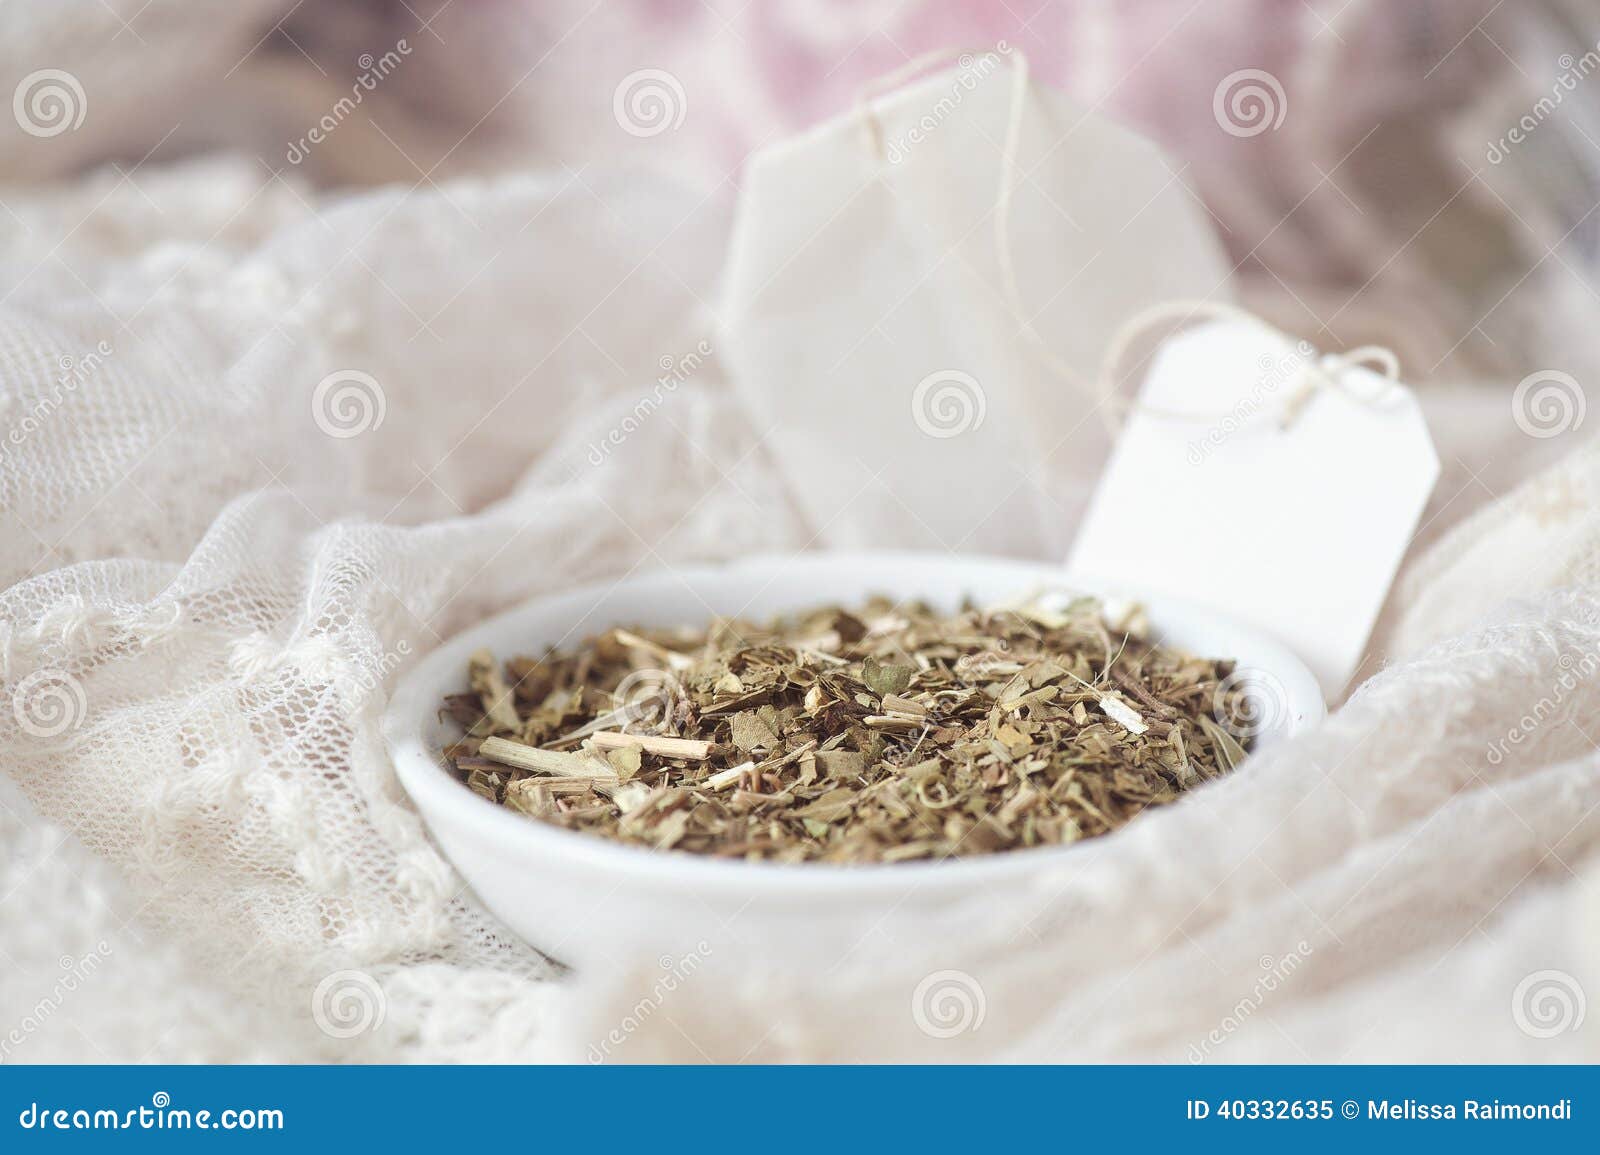 loose passionflower tea (passiflora)